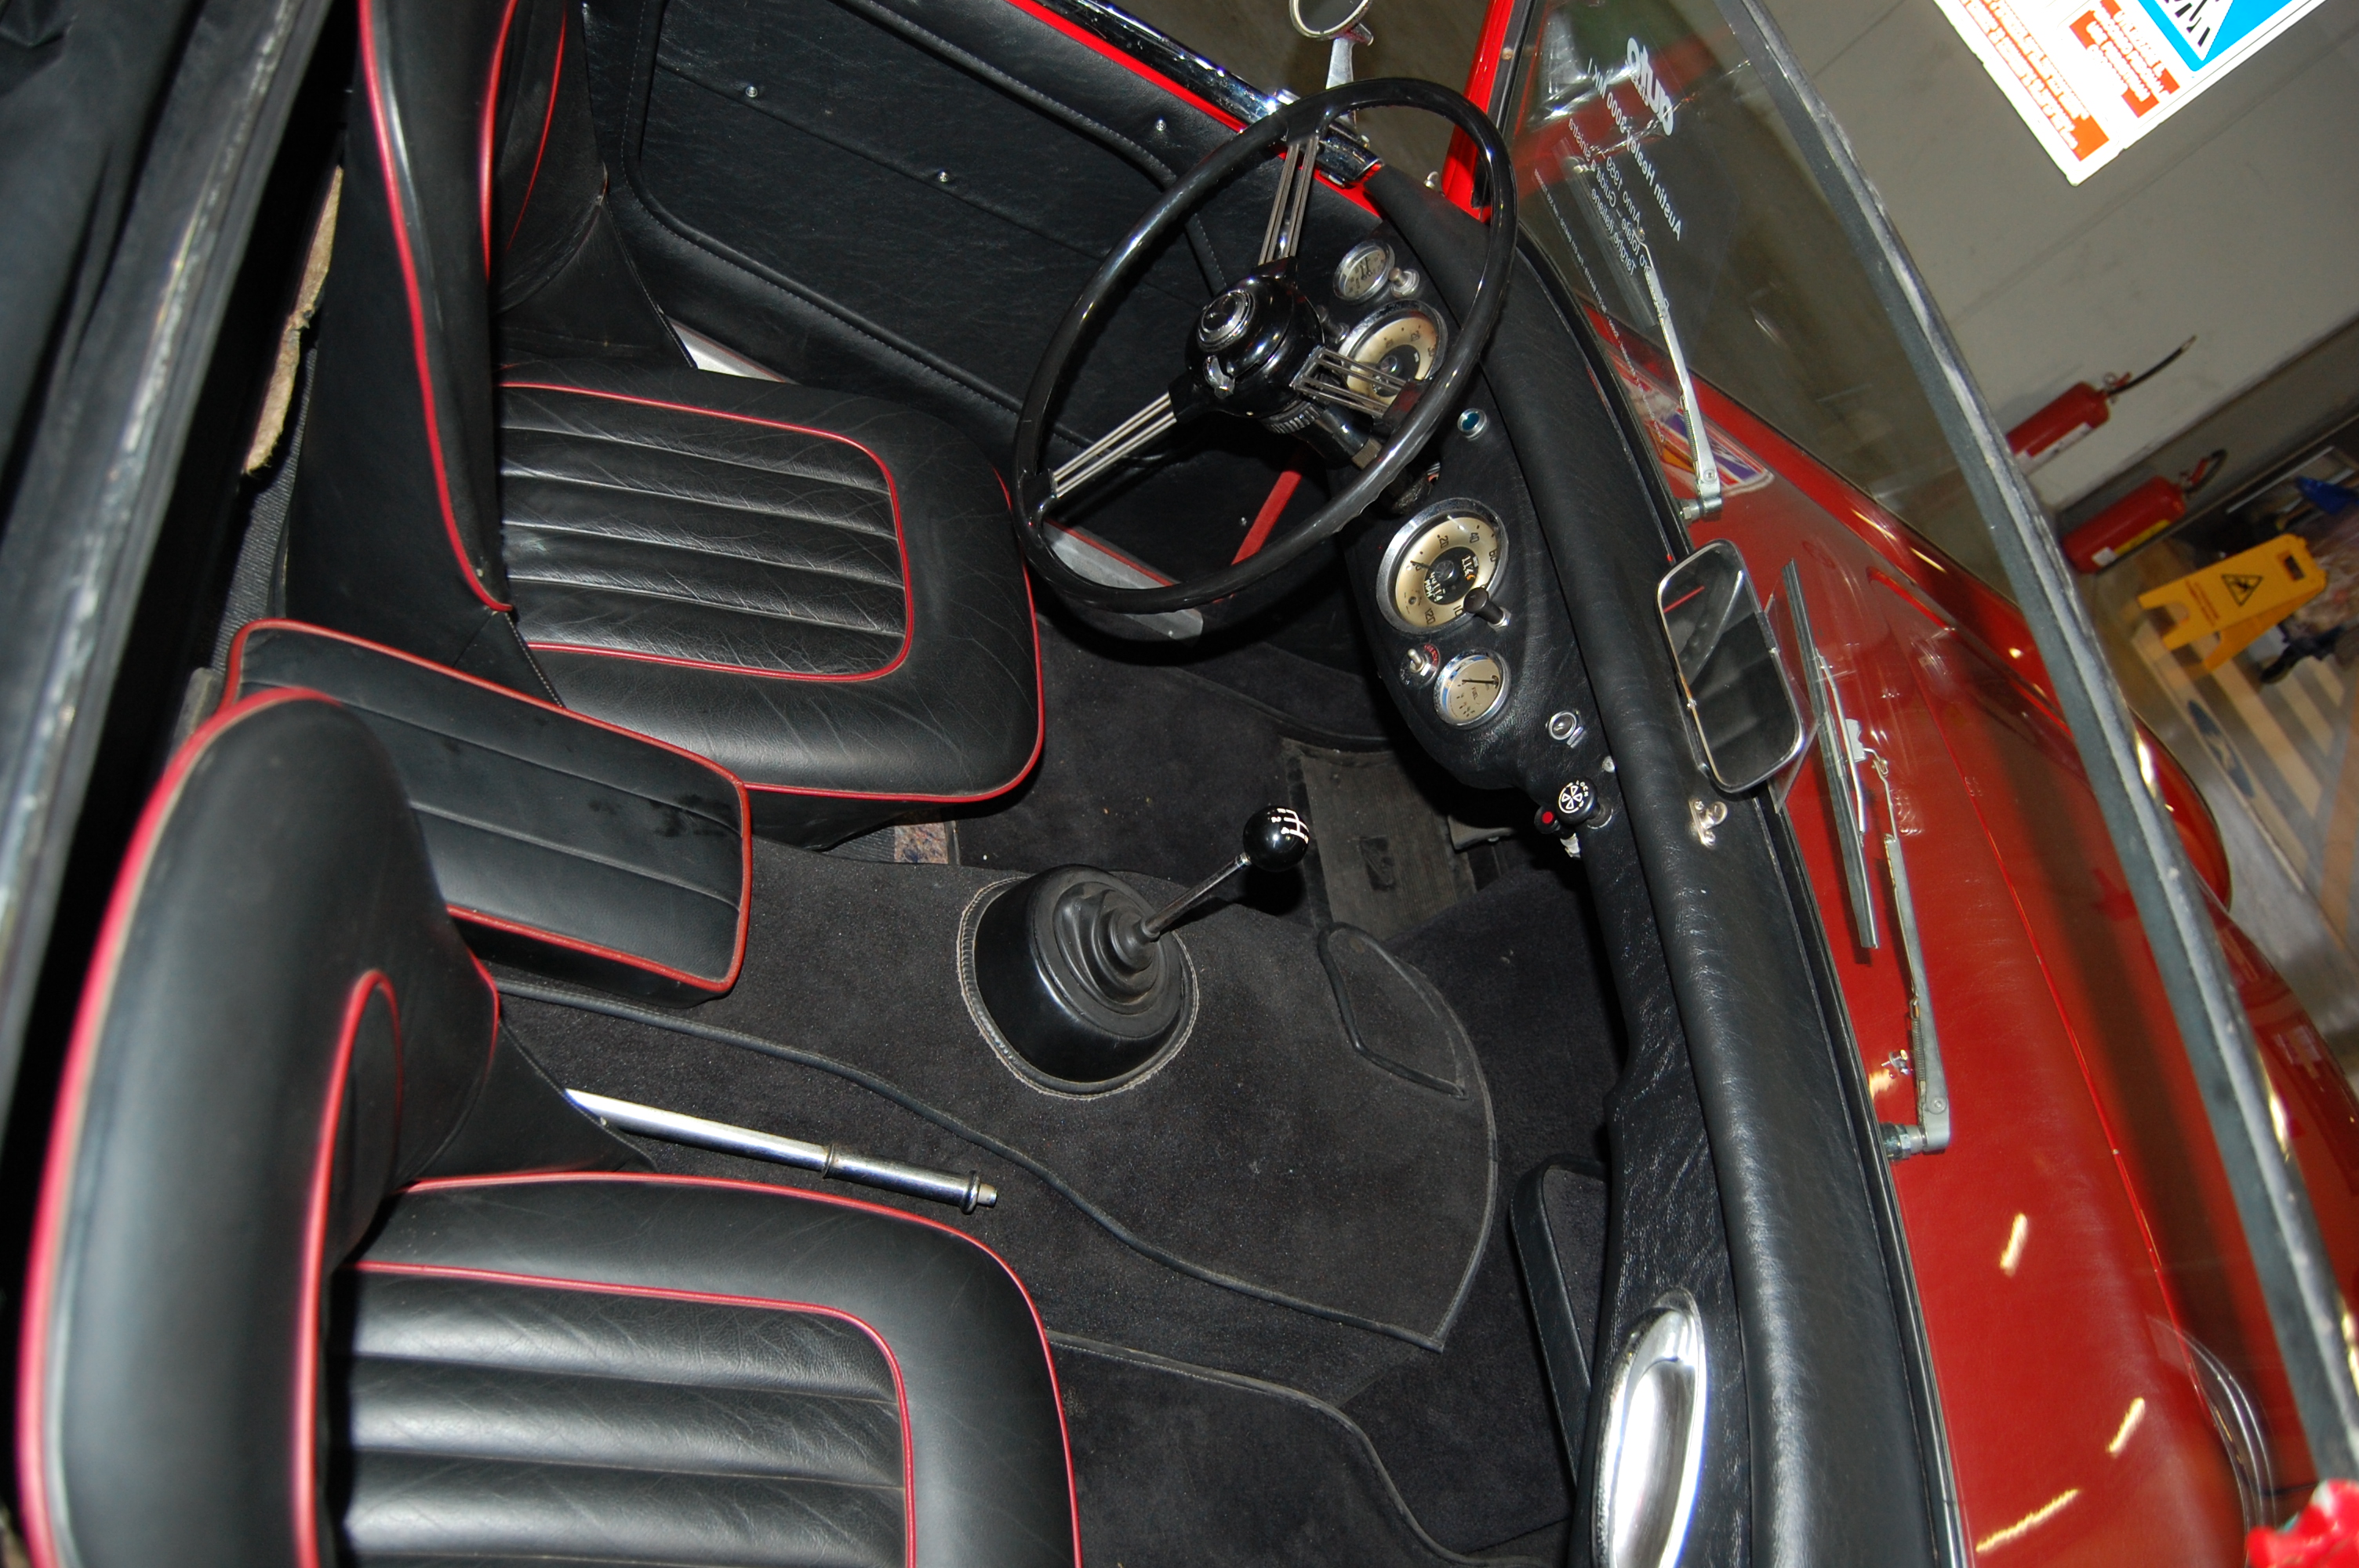 Austin-Healey 3000 Mk I 1959-1961 (1959 BN7), interior